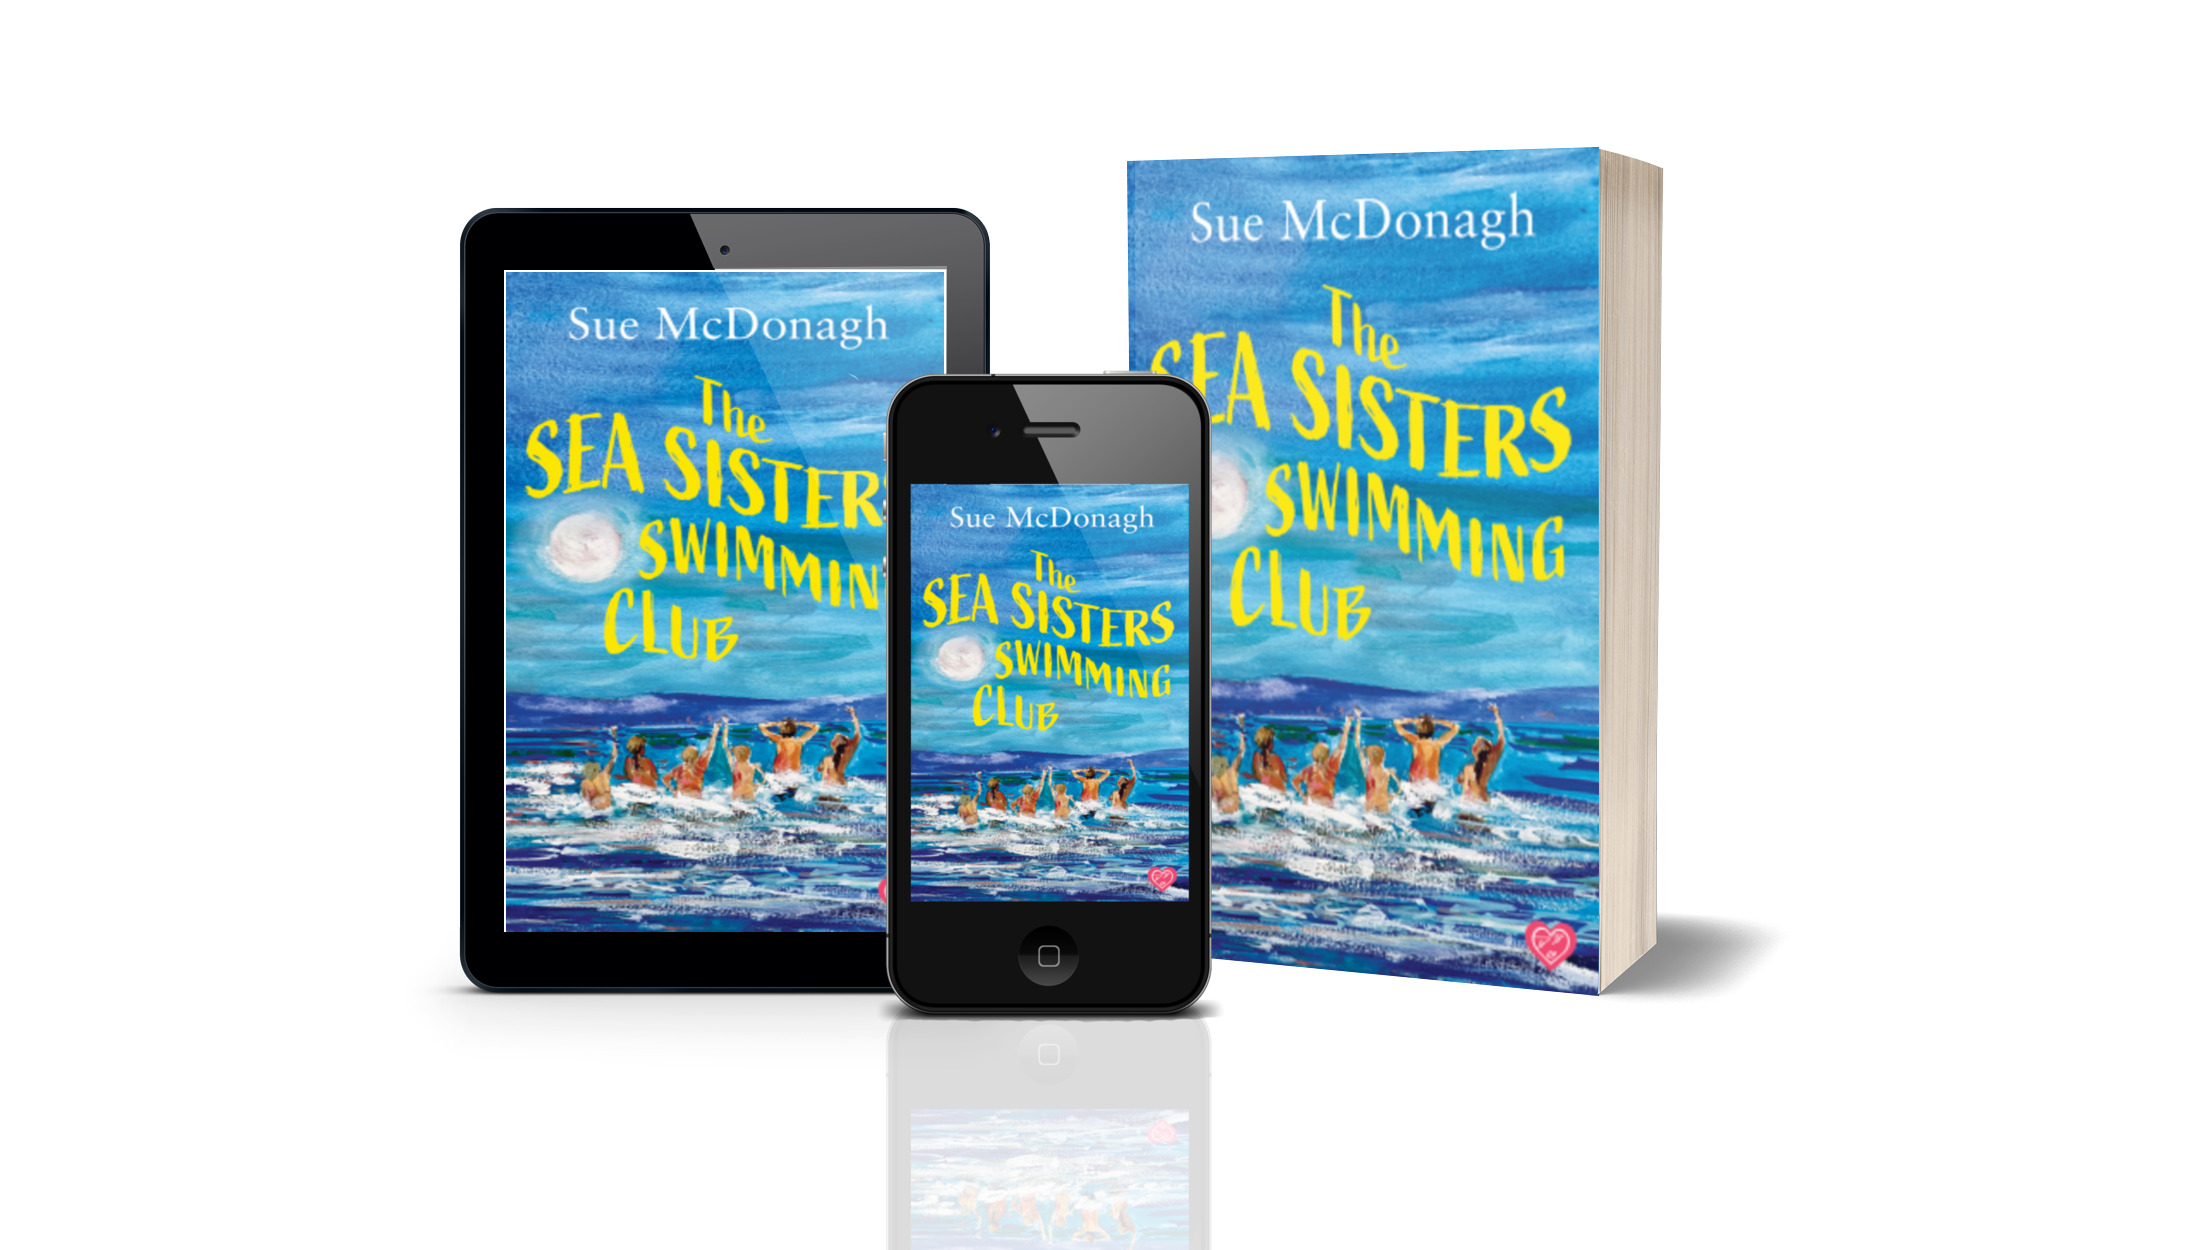 Sue McDonagh – The Sea Sisters Swimming Club